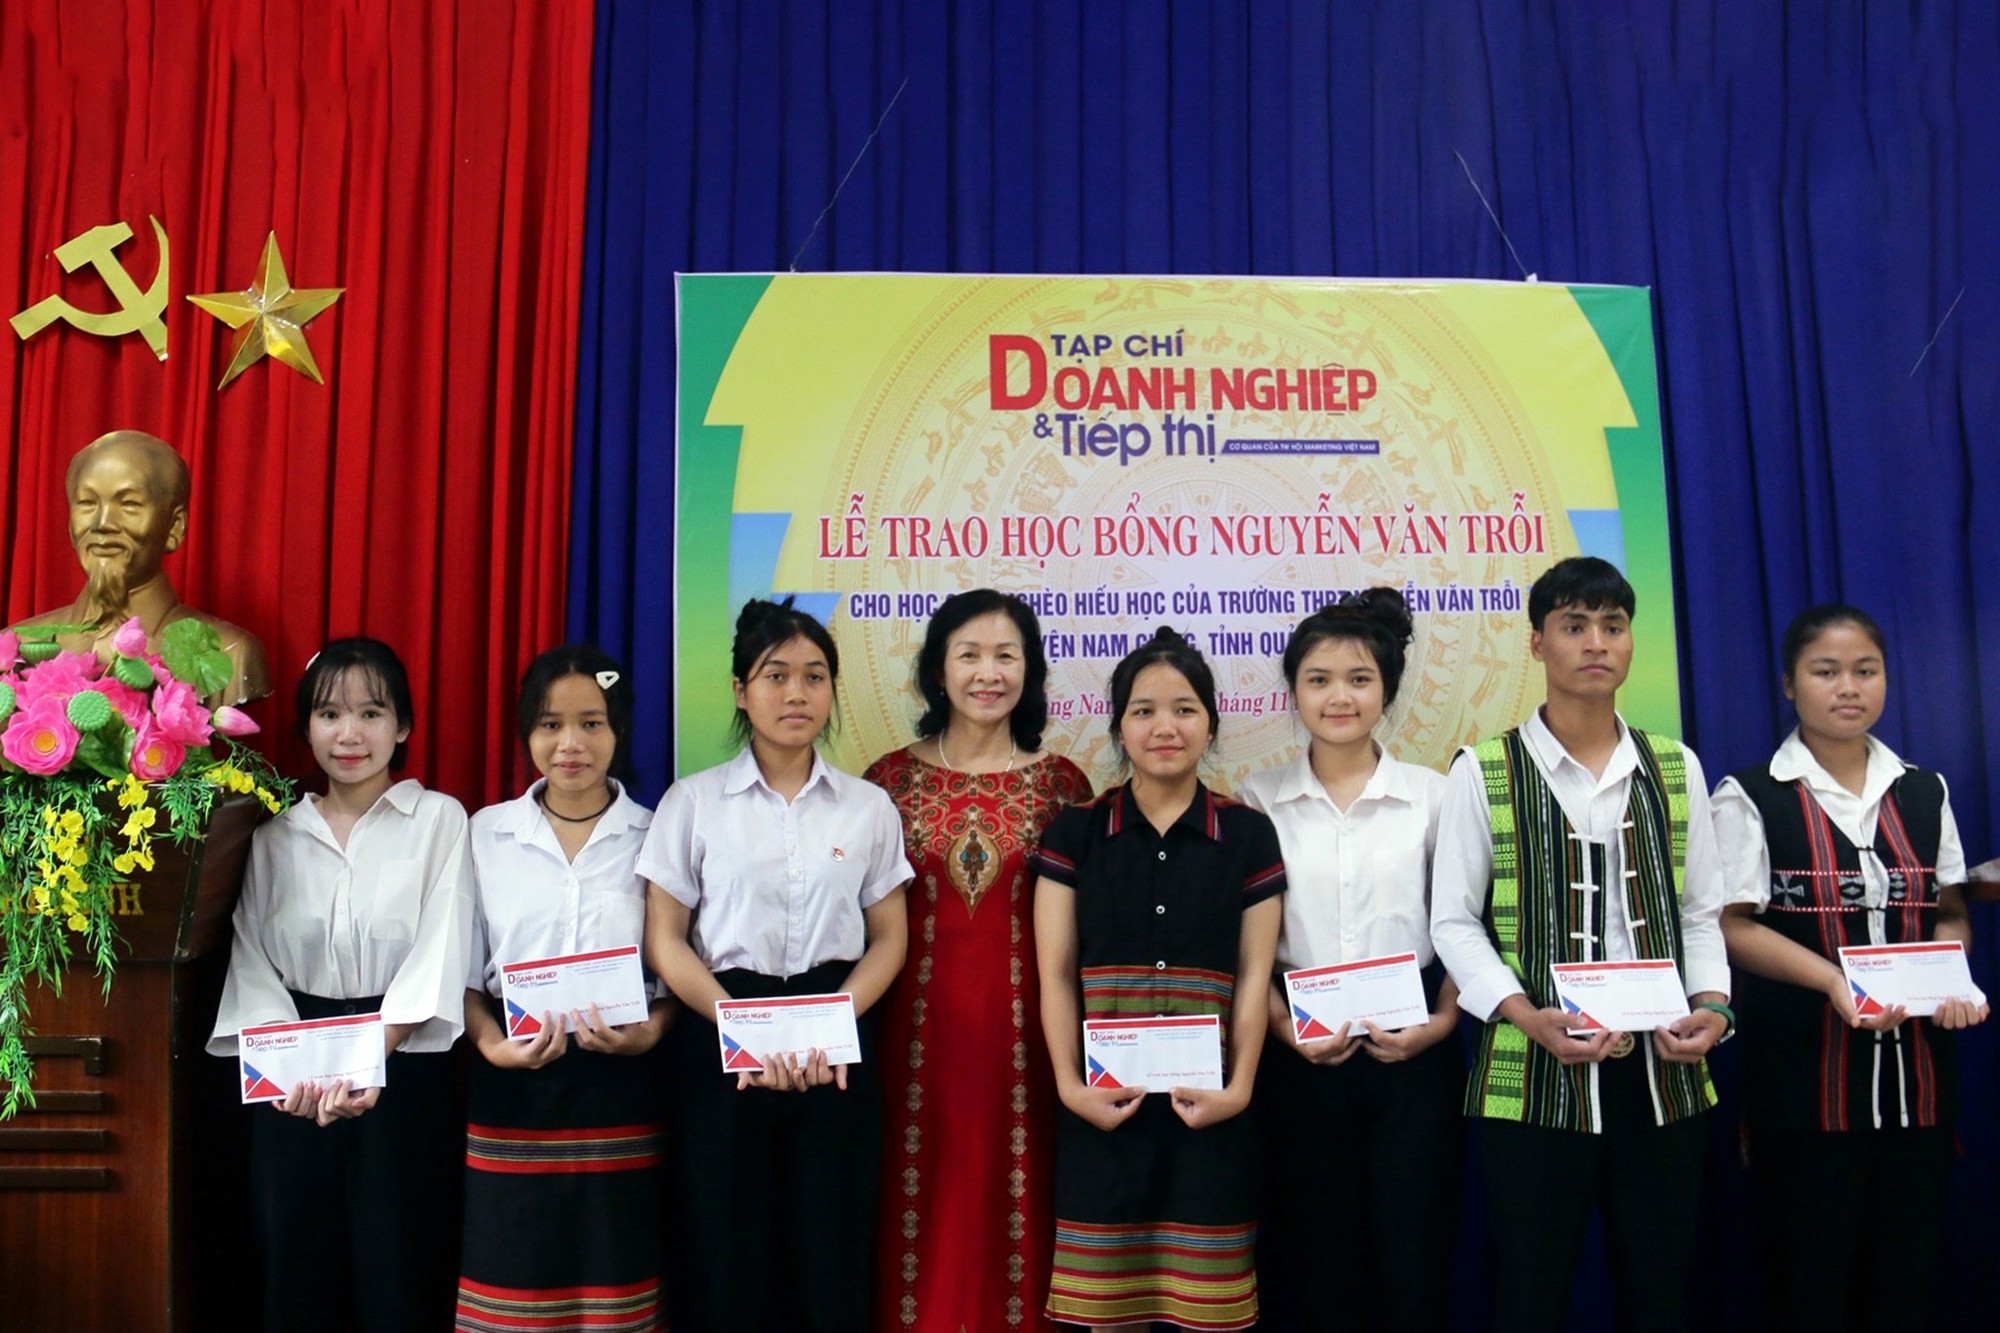 Tạp chí Doanh nghiệp và Tiếp thị trao học bổng Nguyễn Văn Trỗi tại Quảng Nam- Ảnh 2.